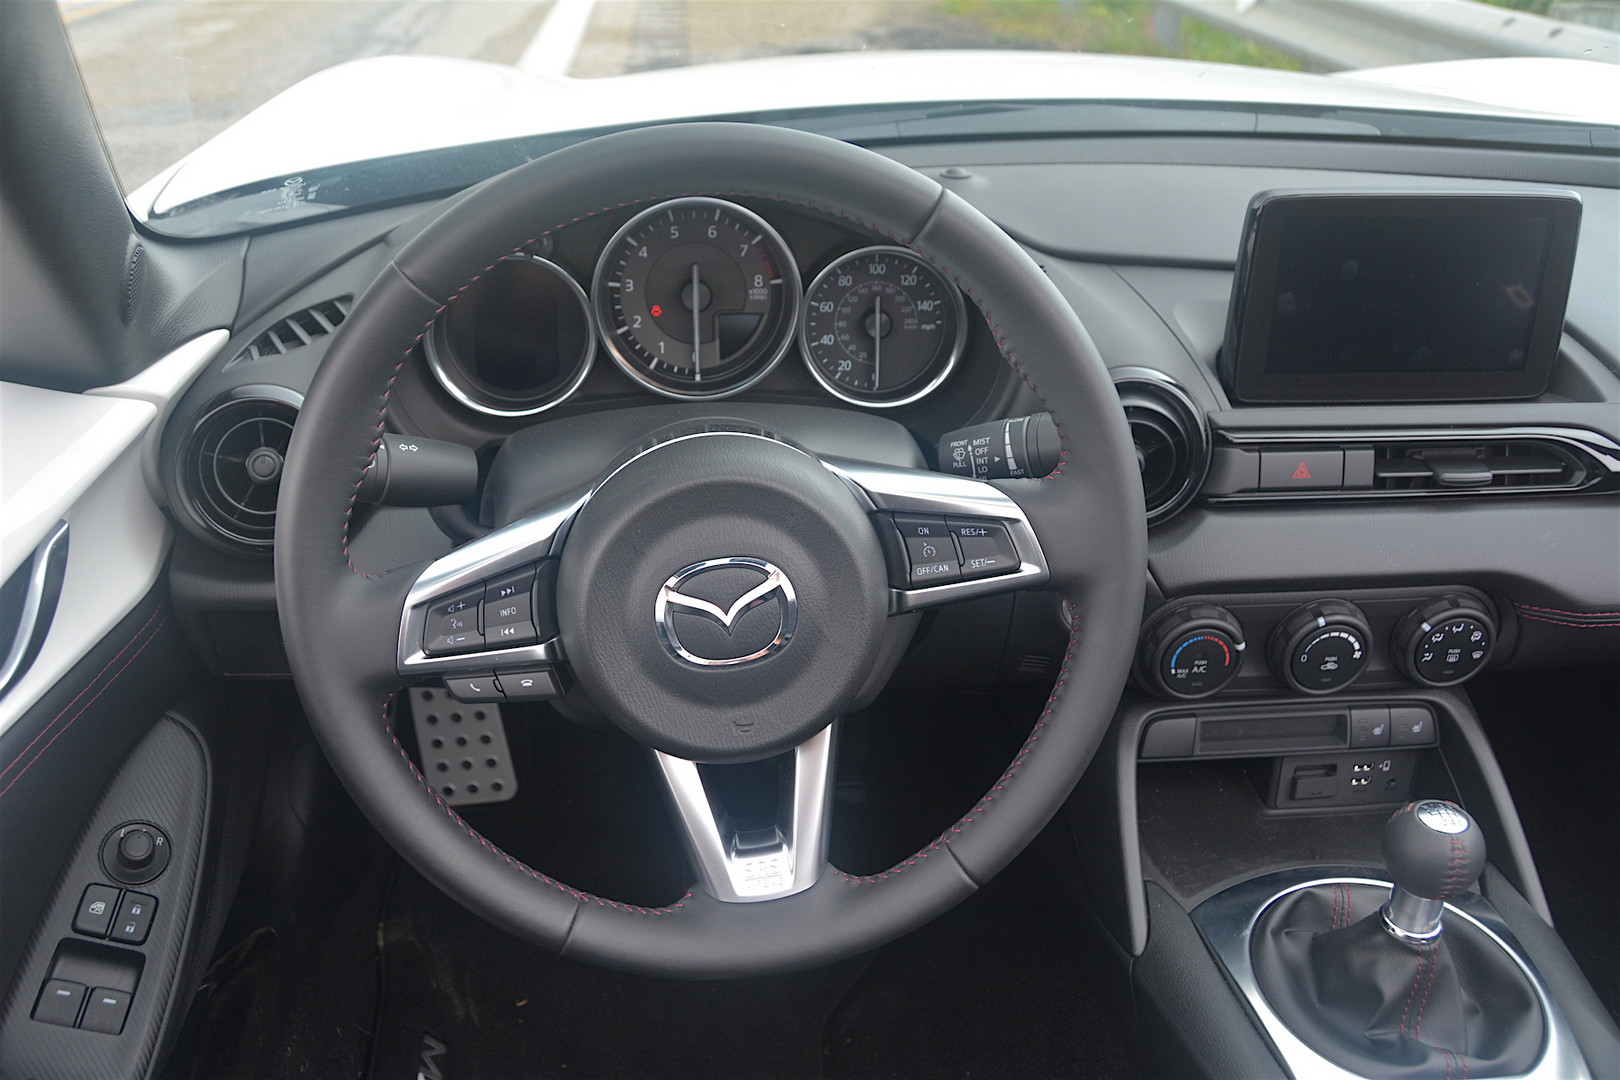 Mazda MX-5 Steering Wheel